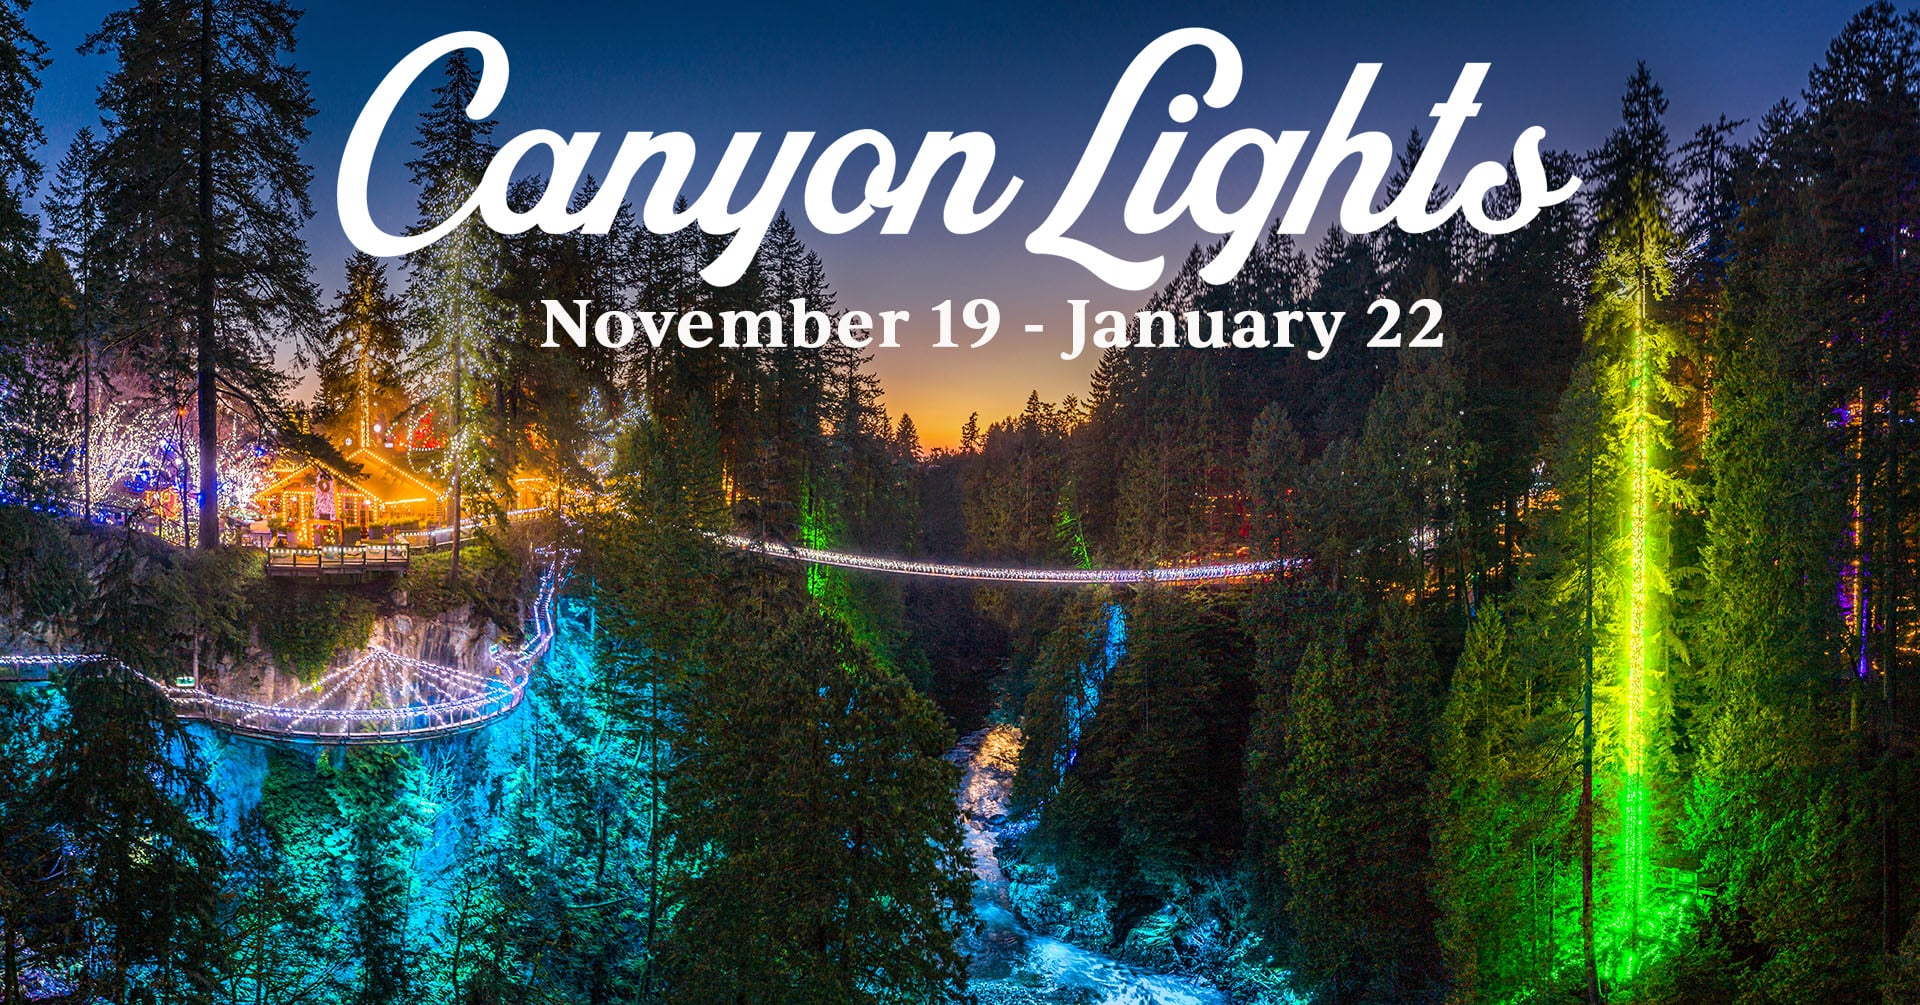 Canyon lights, dog-friendly christmas light display